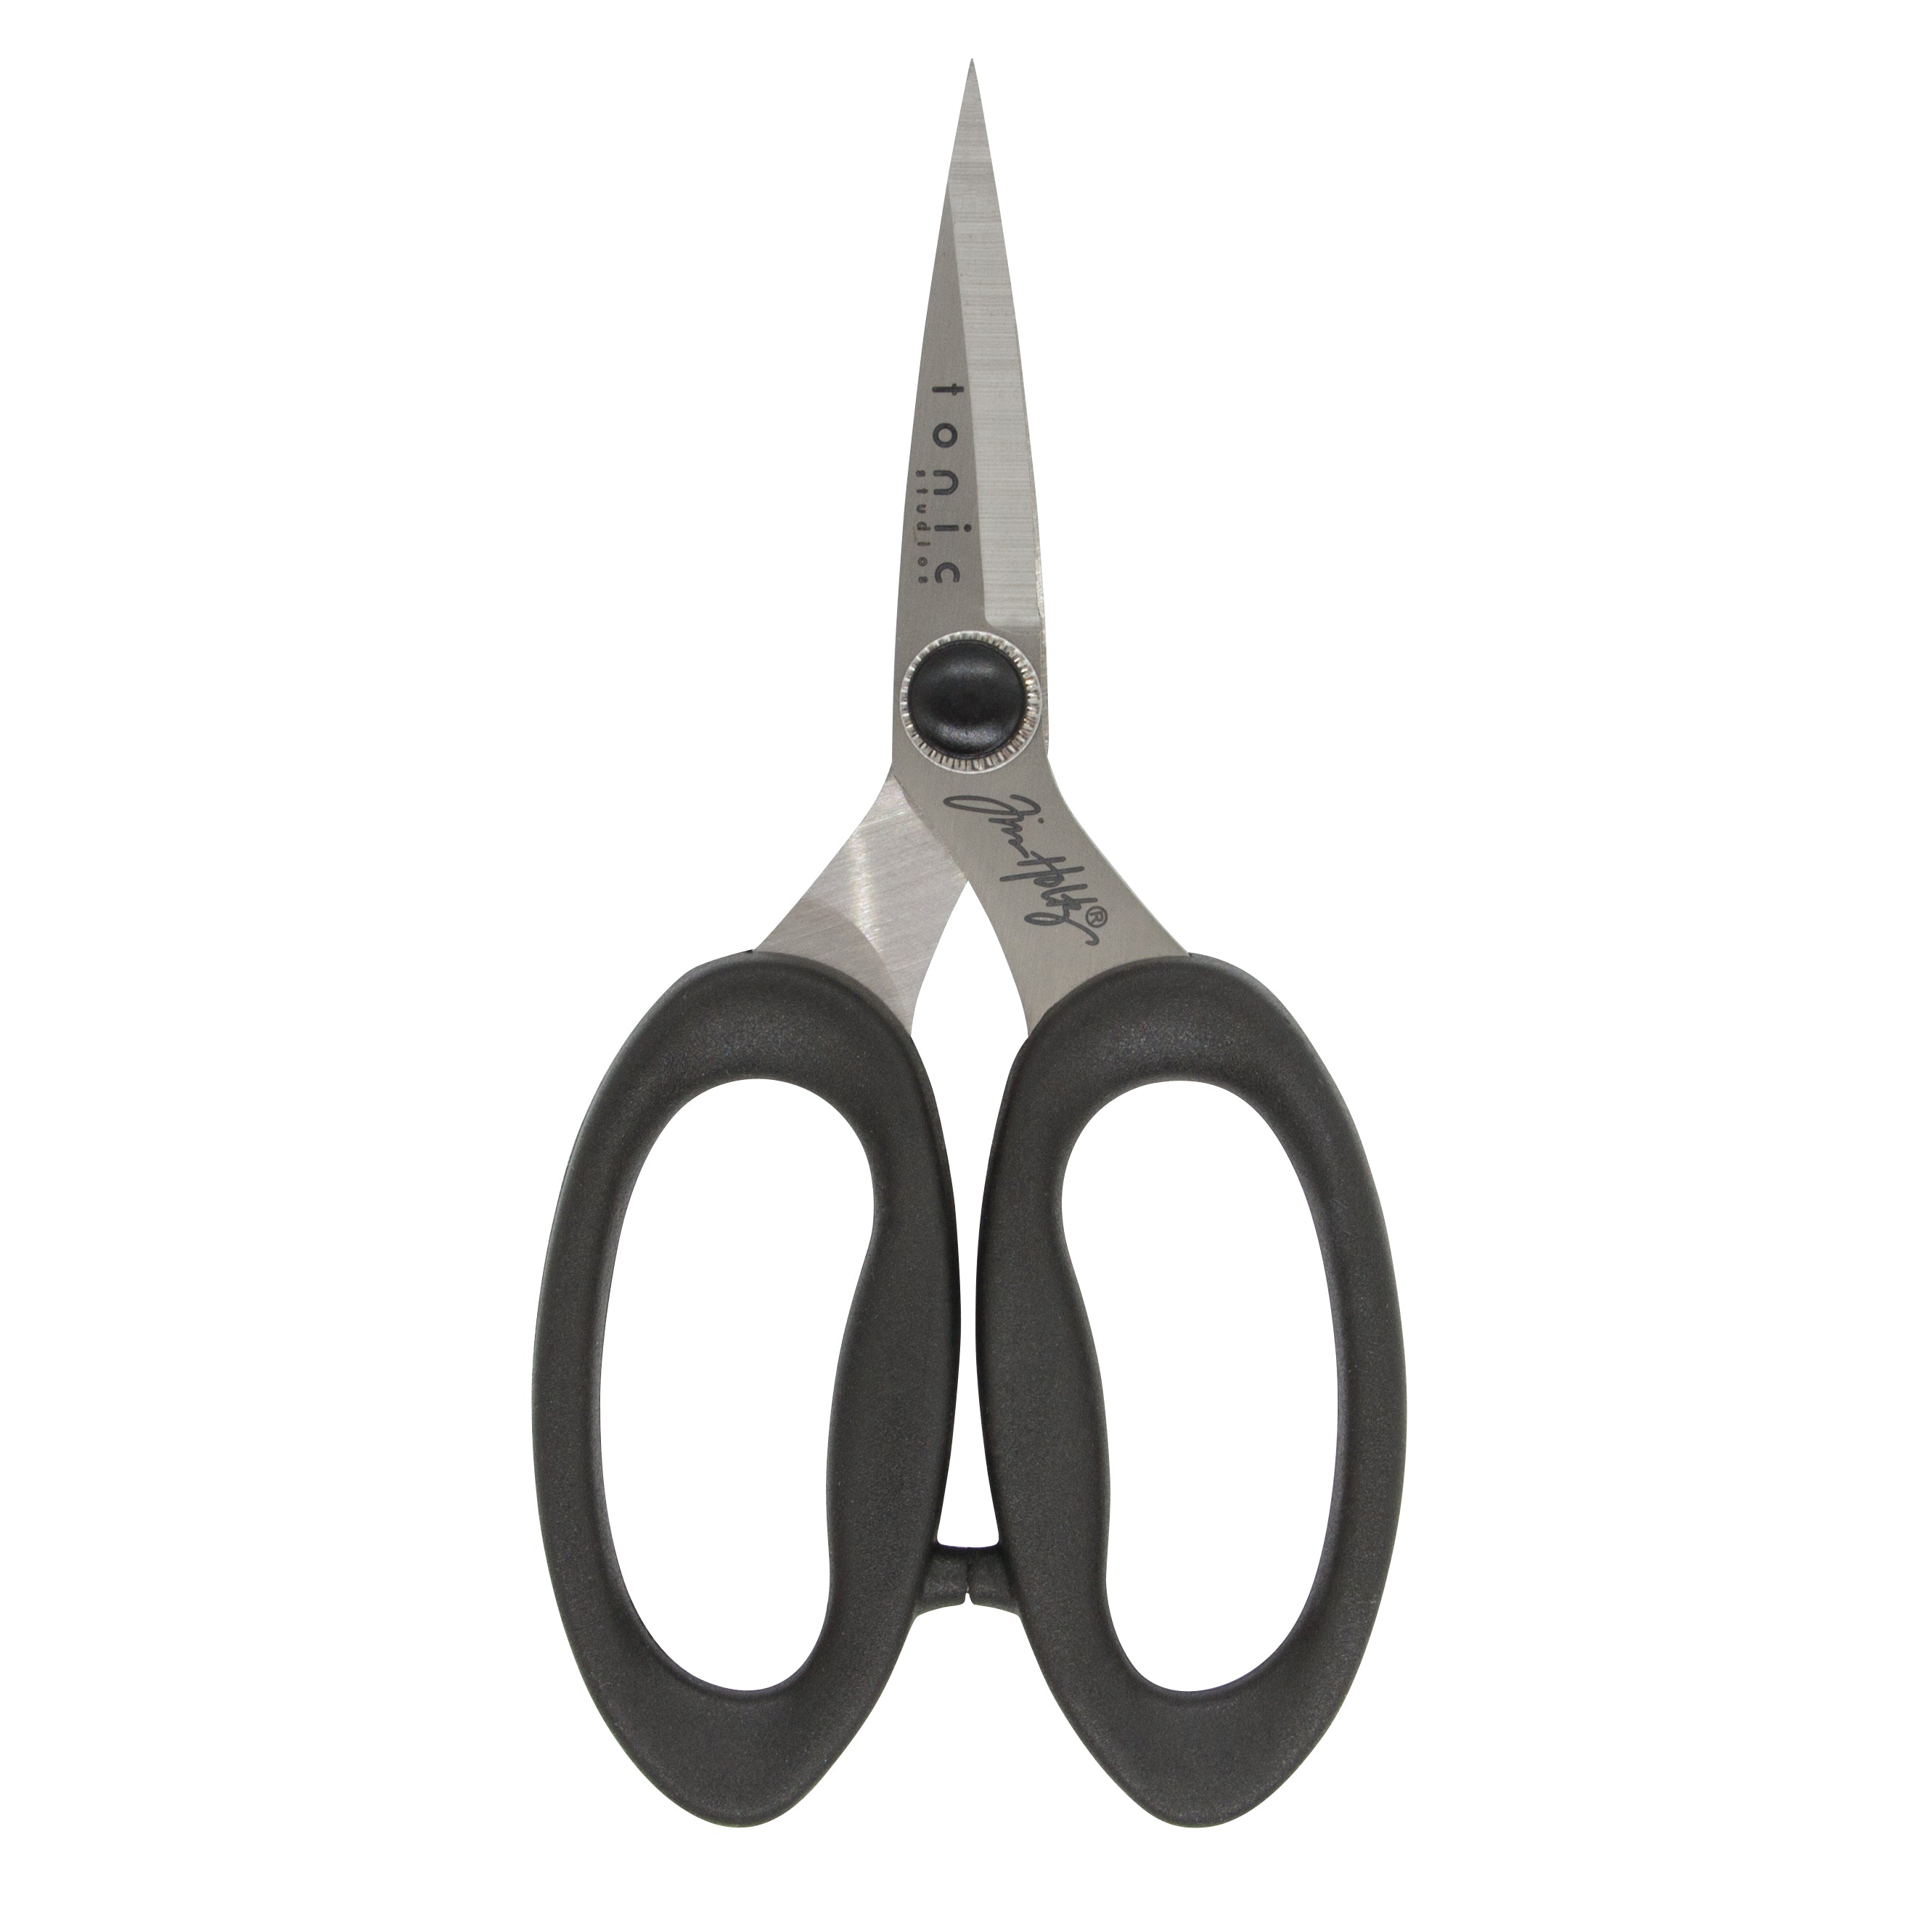 Tonic 5 inch Non-Stick Precision Scissors 104E